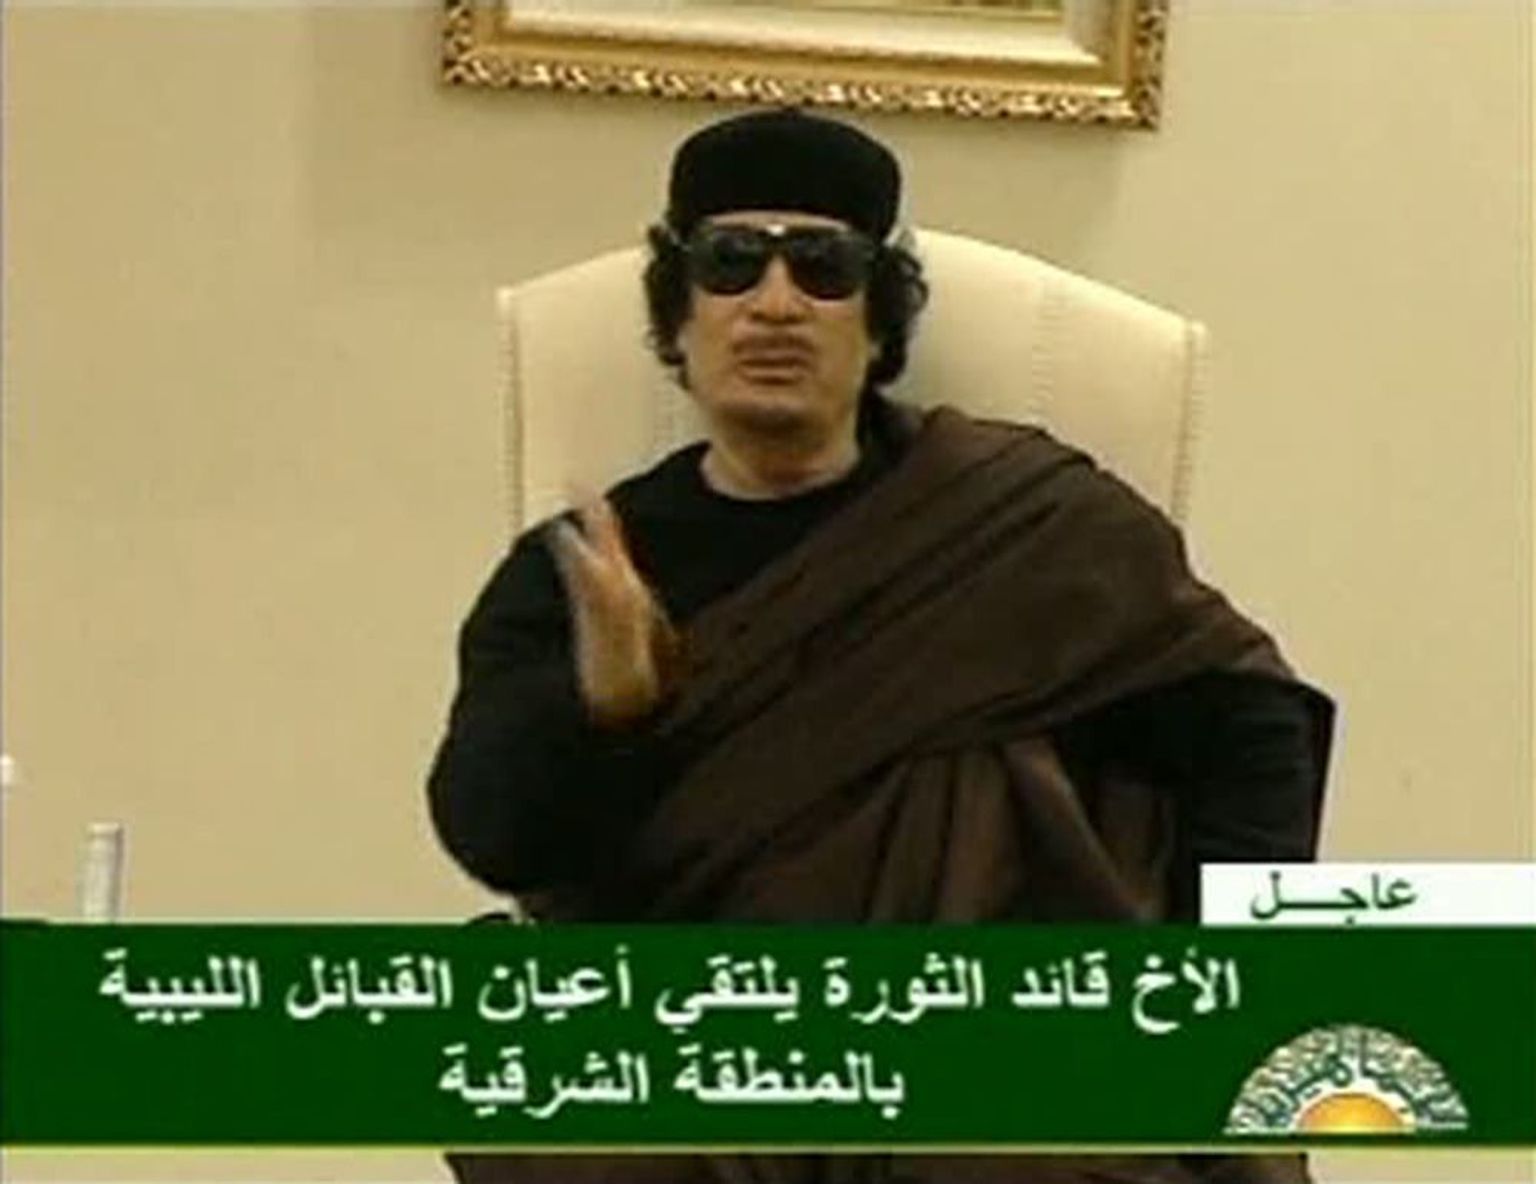 Muammar al-Gaddafi